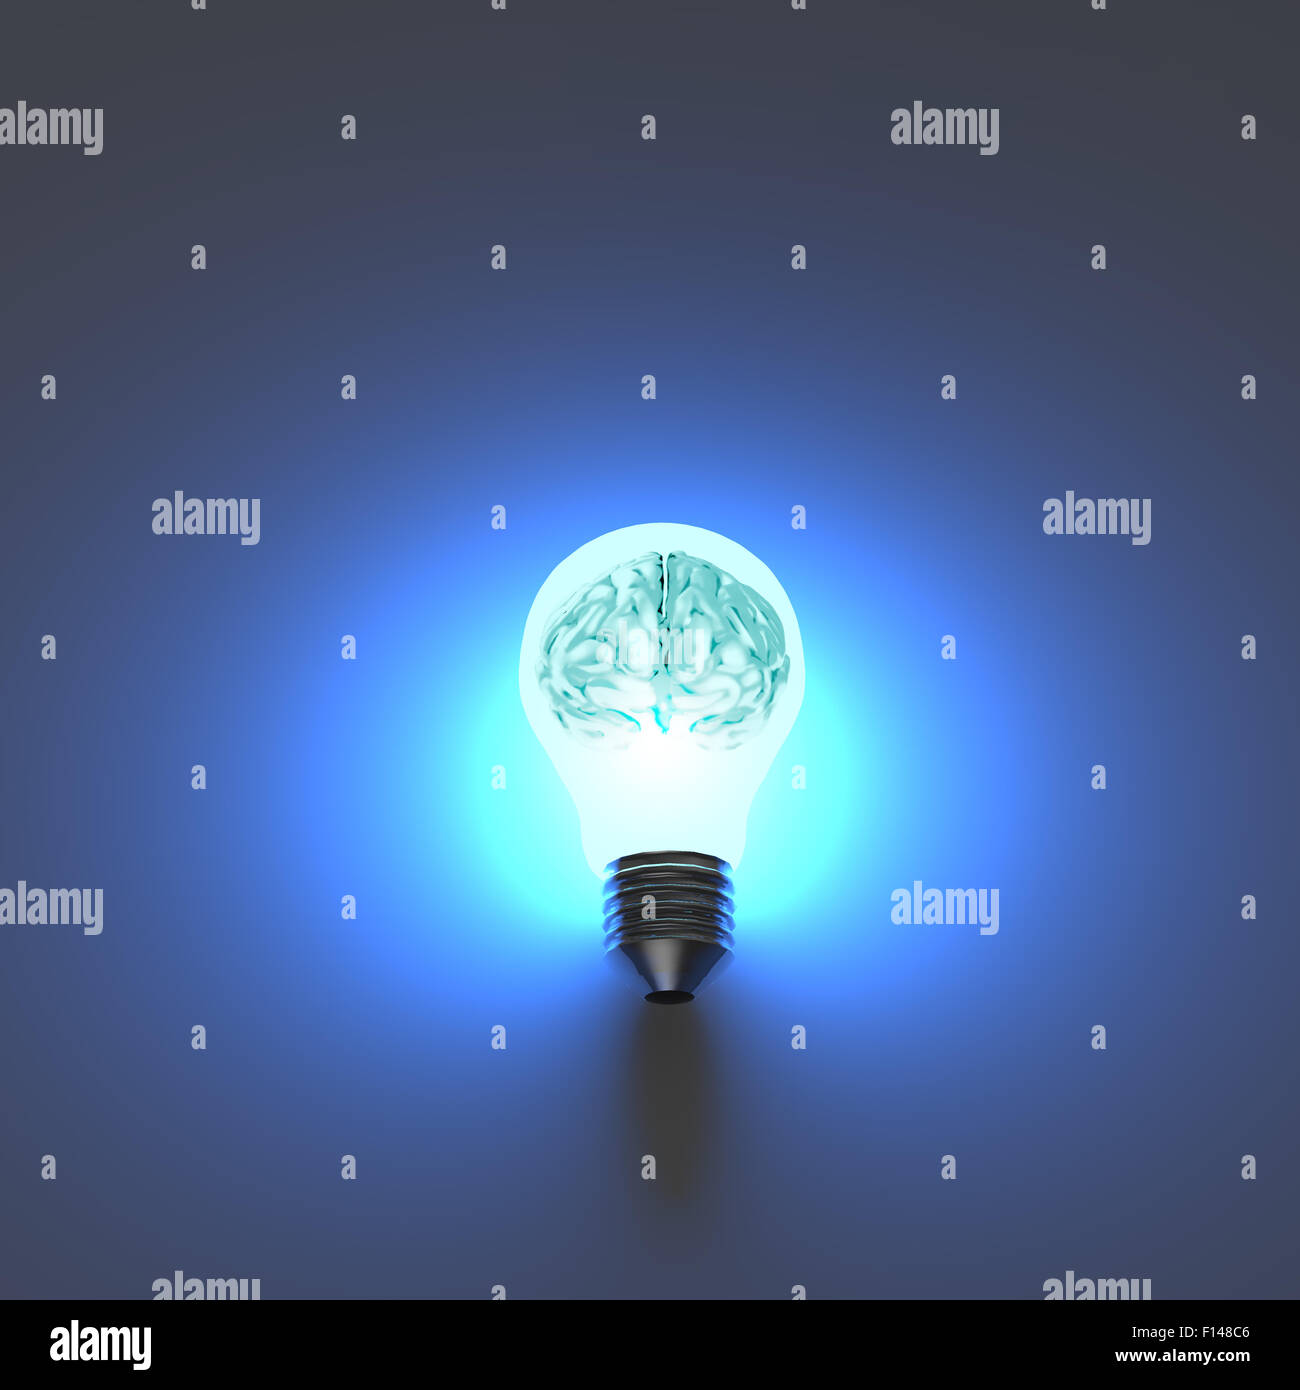 Metal 3d cerveau humain dans une ampoule comme concept créatif Banque D'Images